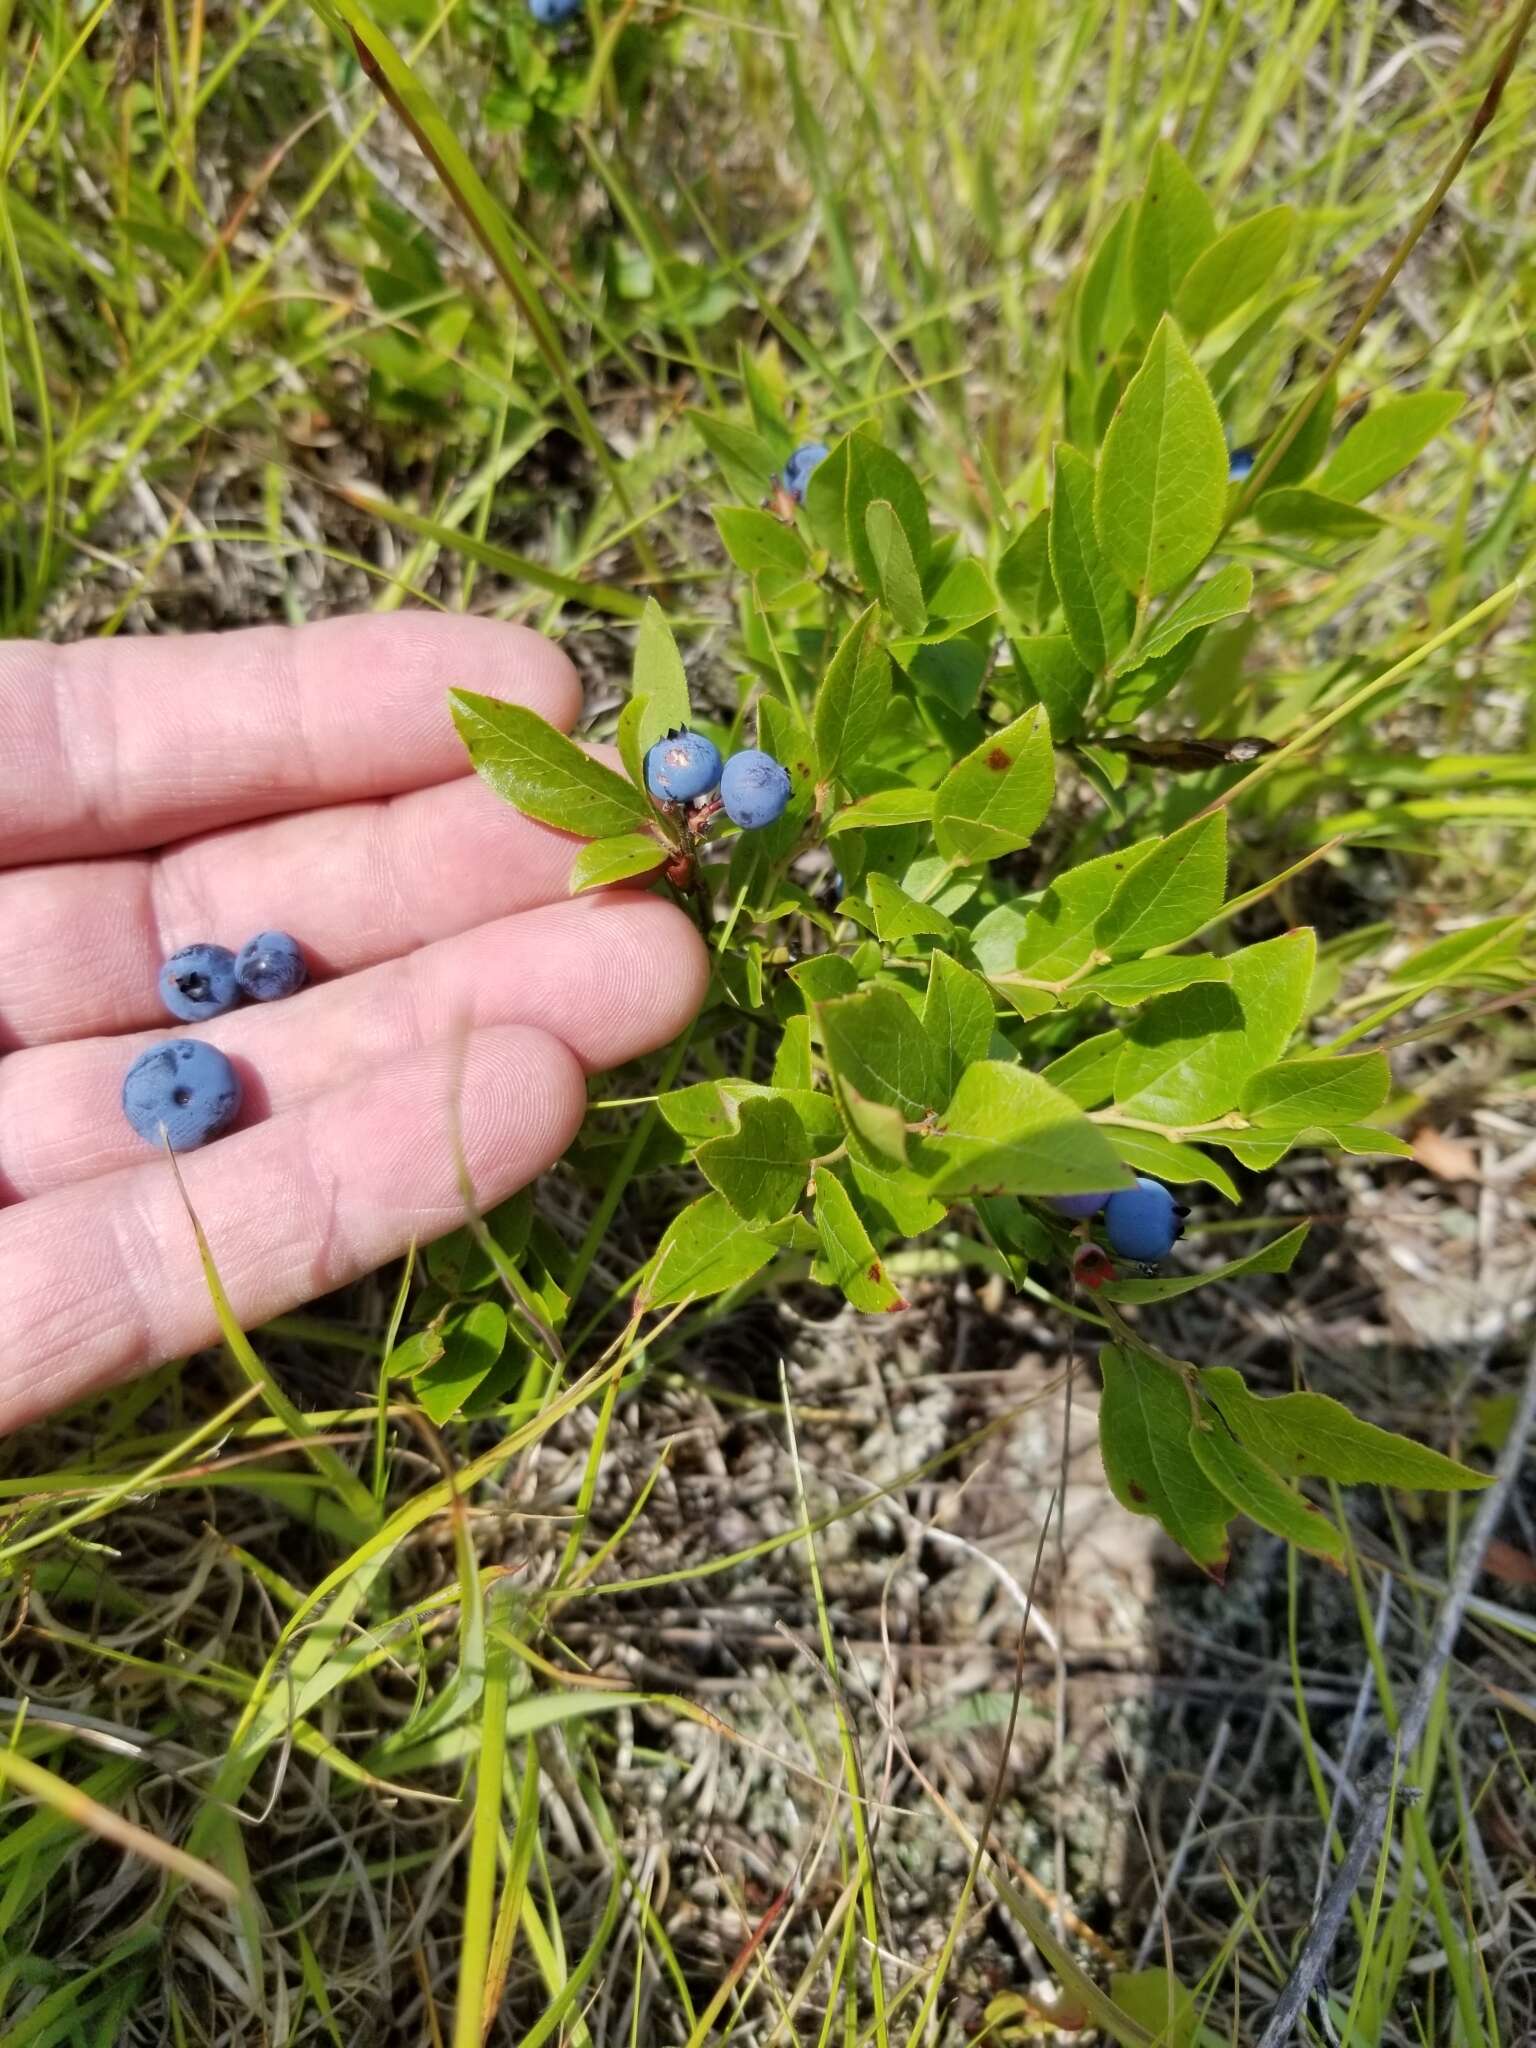 Image of lowbush blueberry